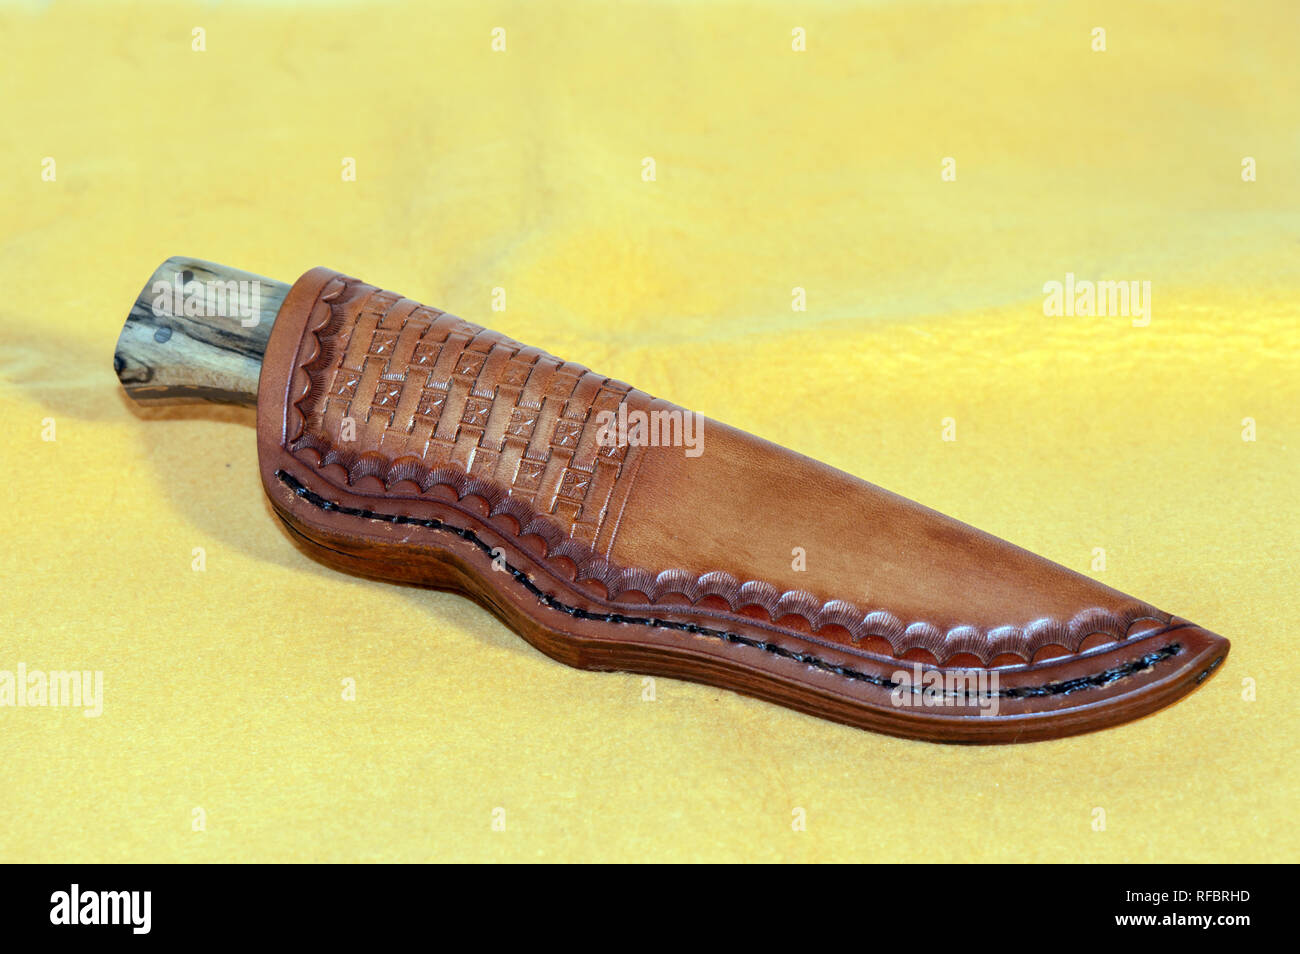 Ein taschenmesser in einem Custom Fit Lederscheide auf gelbem Hintergrund  Stockfotografie - Alamy